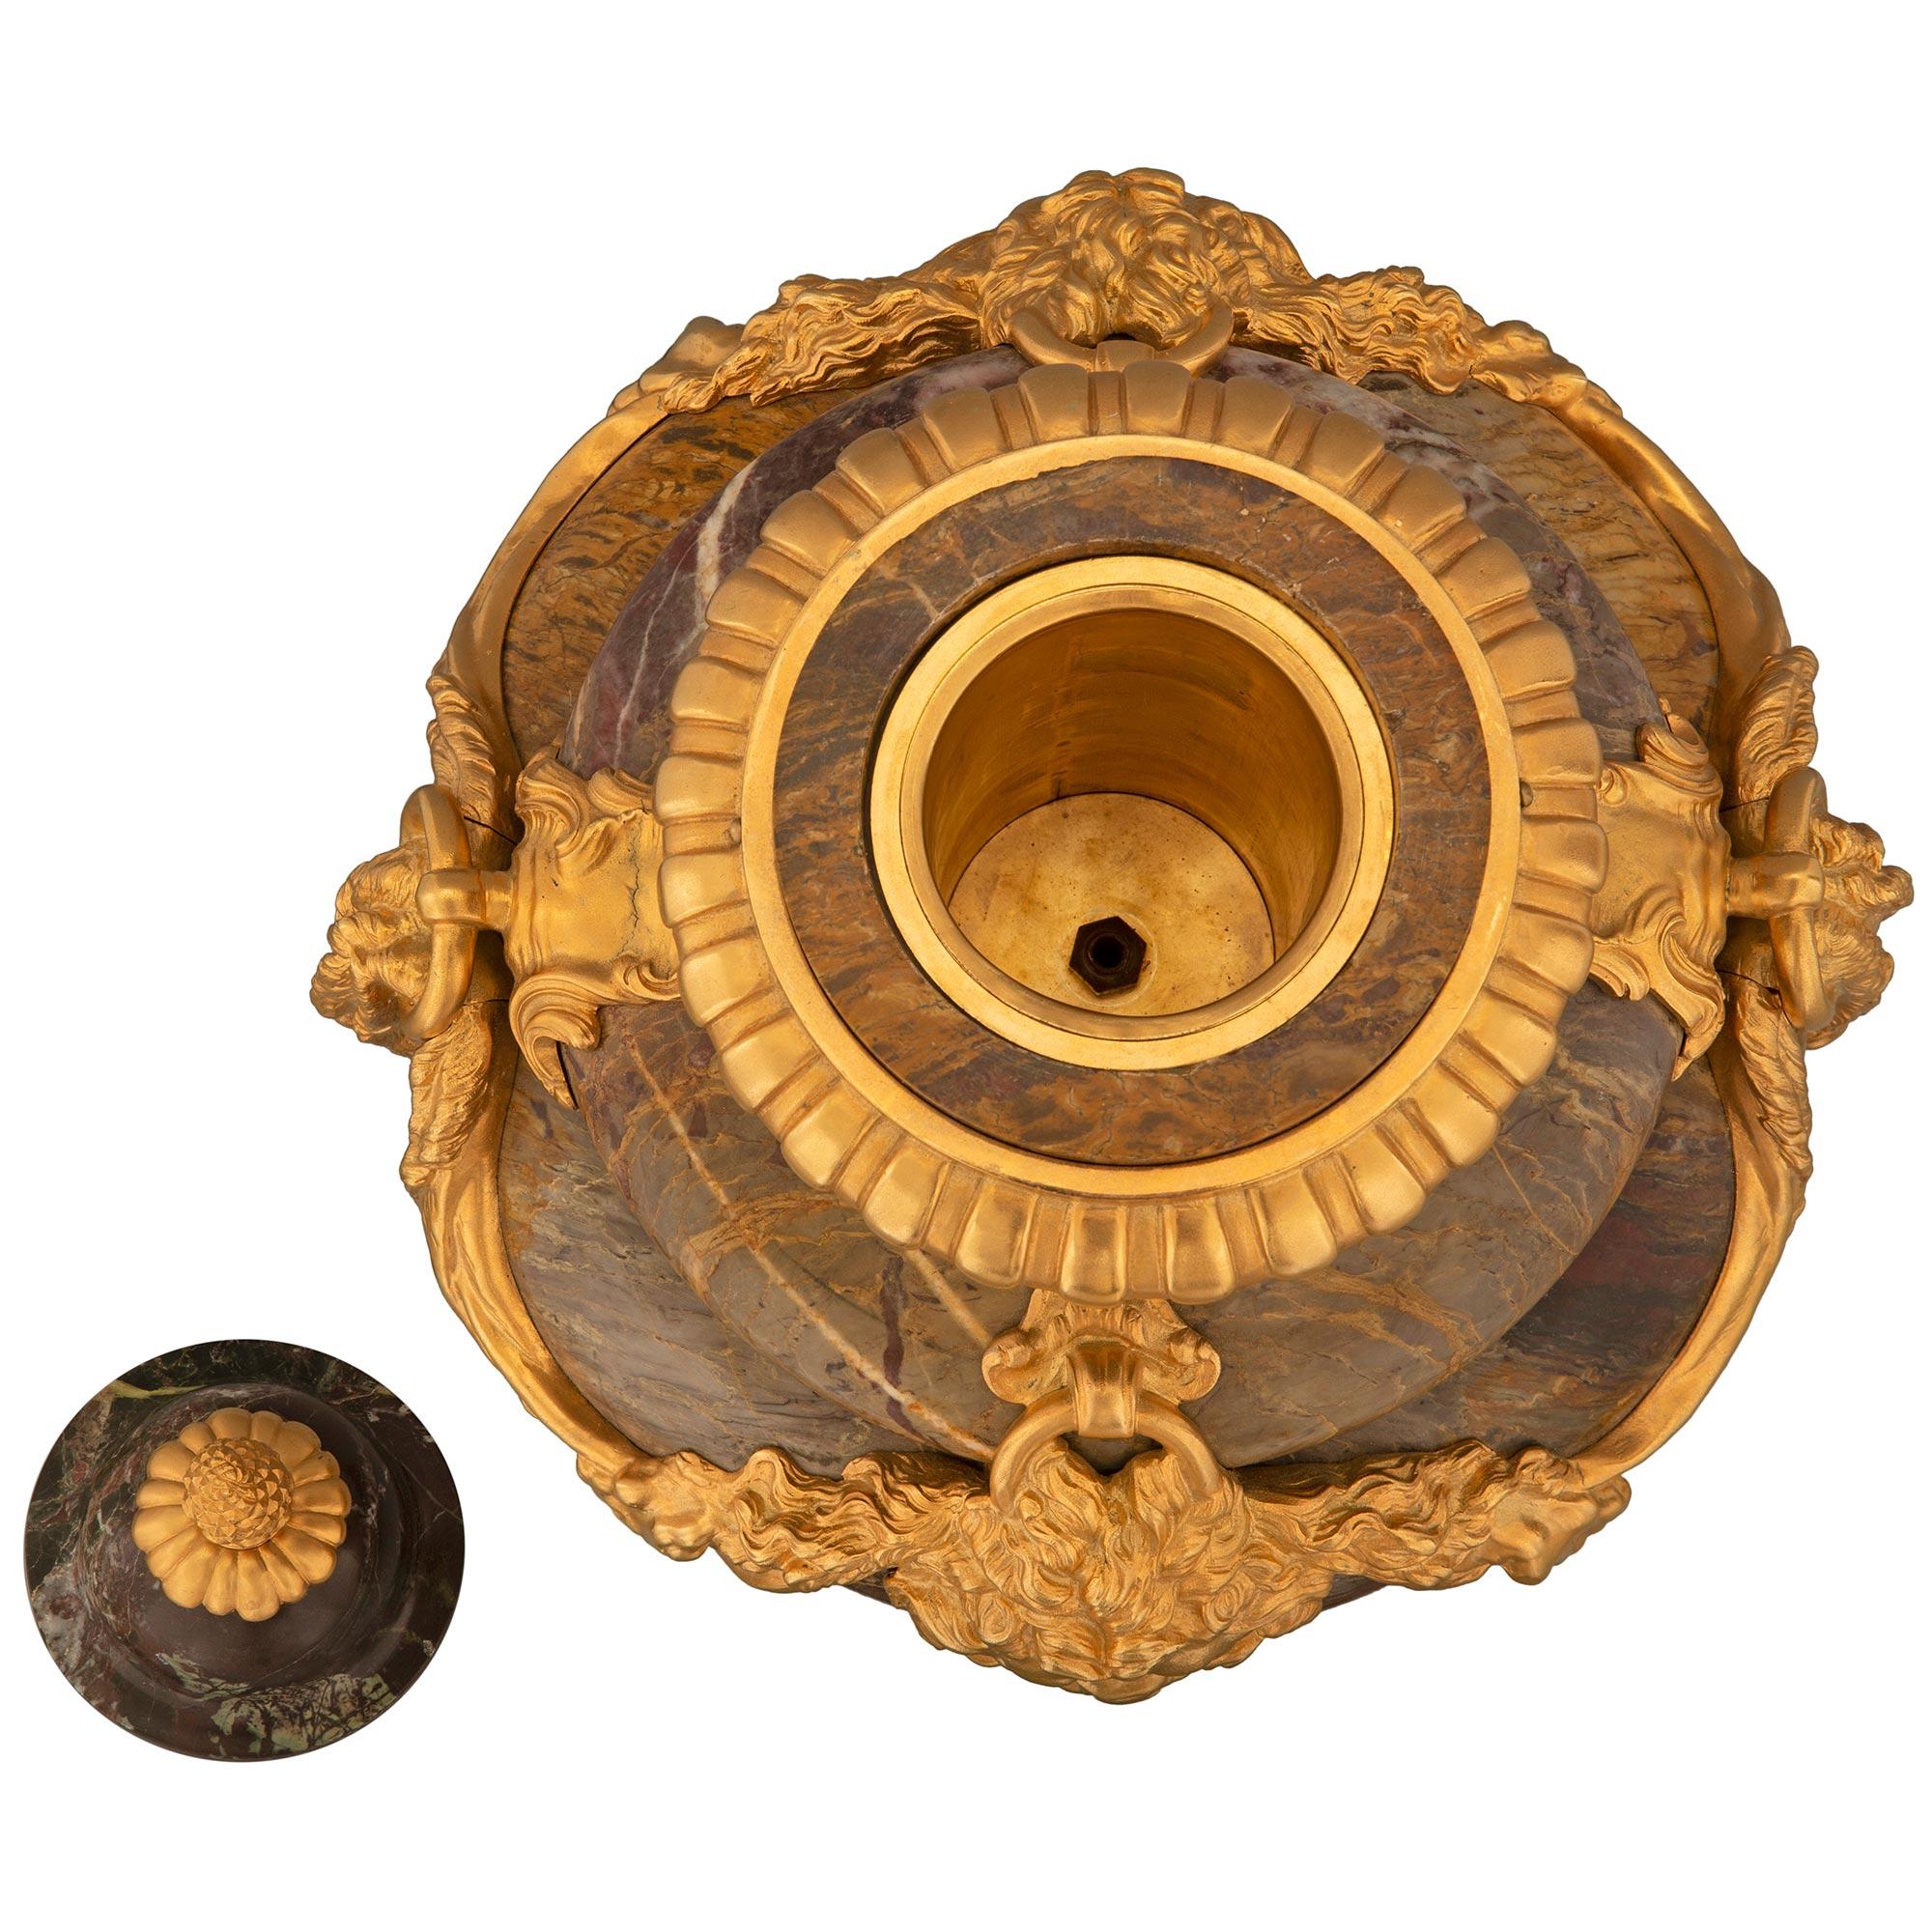 Ein prächtiges und beeindruckendes Paar französischer Sarrancolin-Marmor- und Ormoludeckel-Urnen aus dem 19. Jahrhundert. Jede großformatige Urne steht auf einem quadratischen Marmorsockel mit einem feinen Ormolu-Filet am Boden und einem